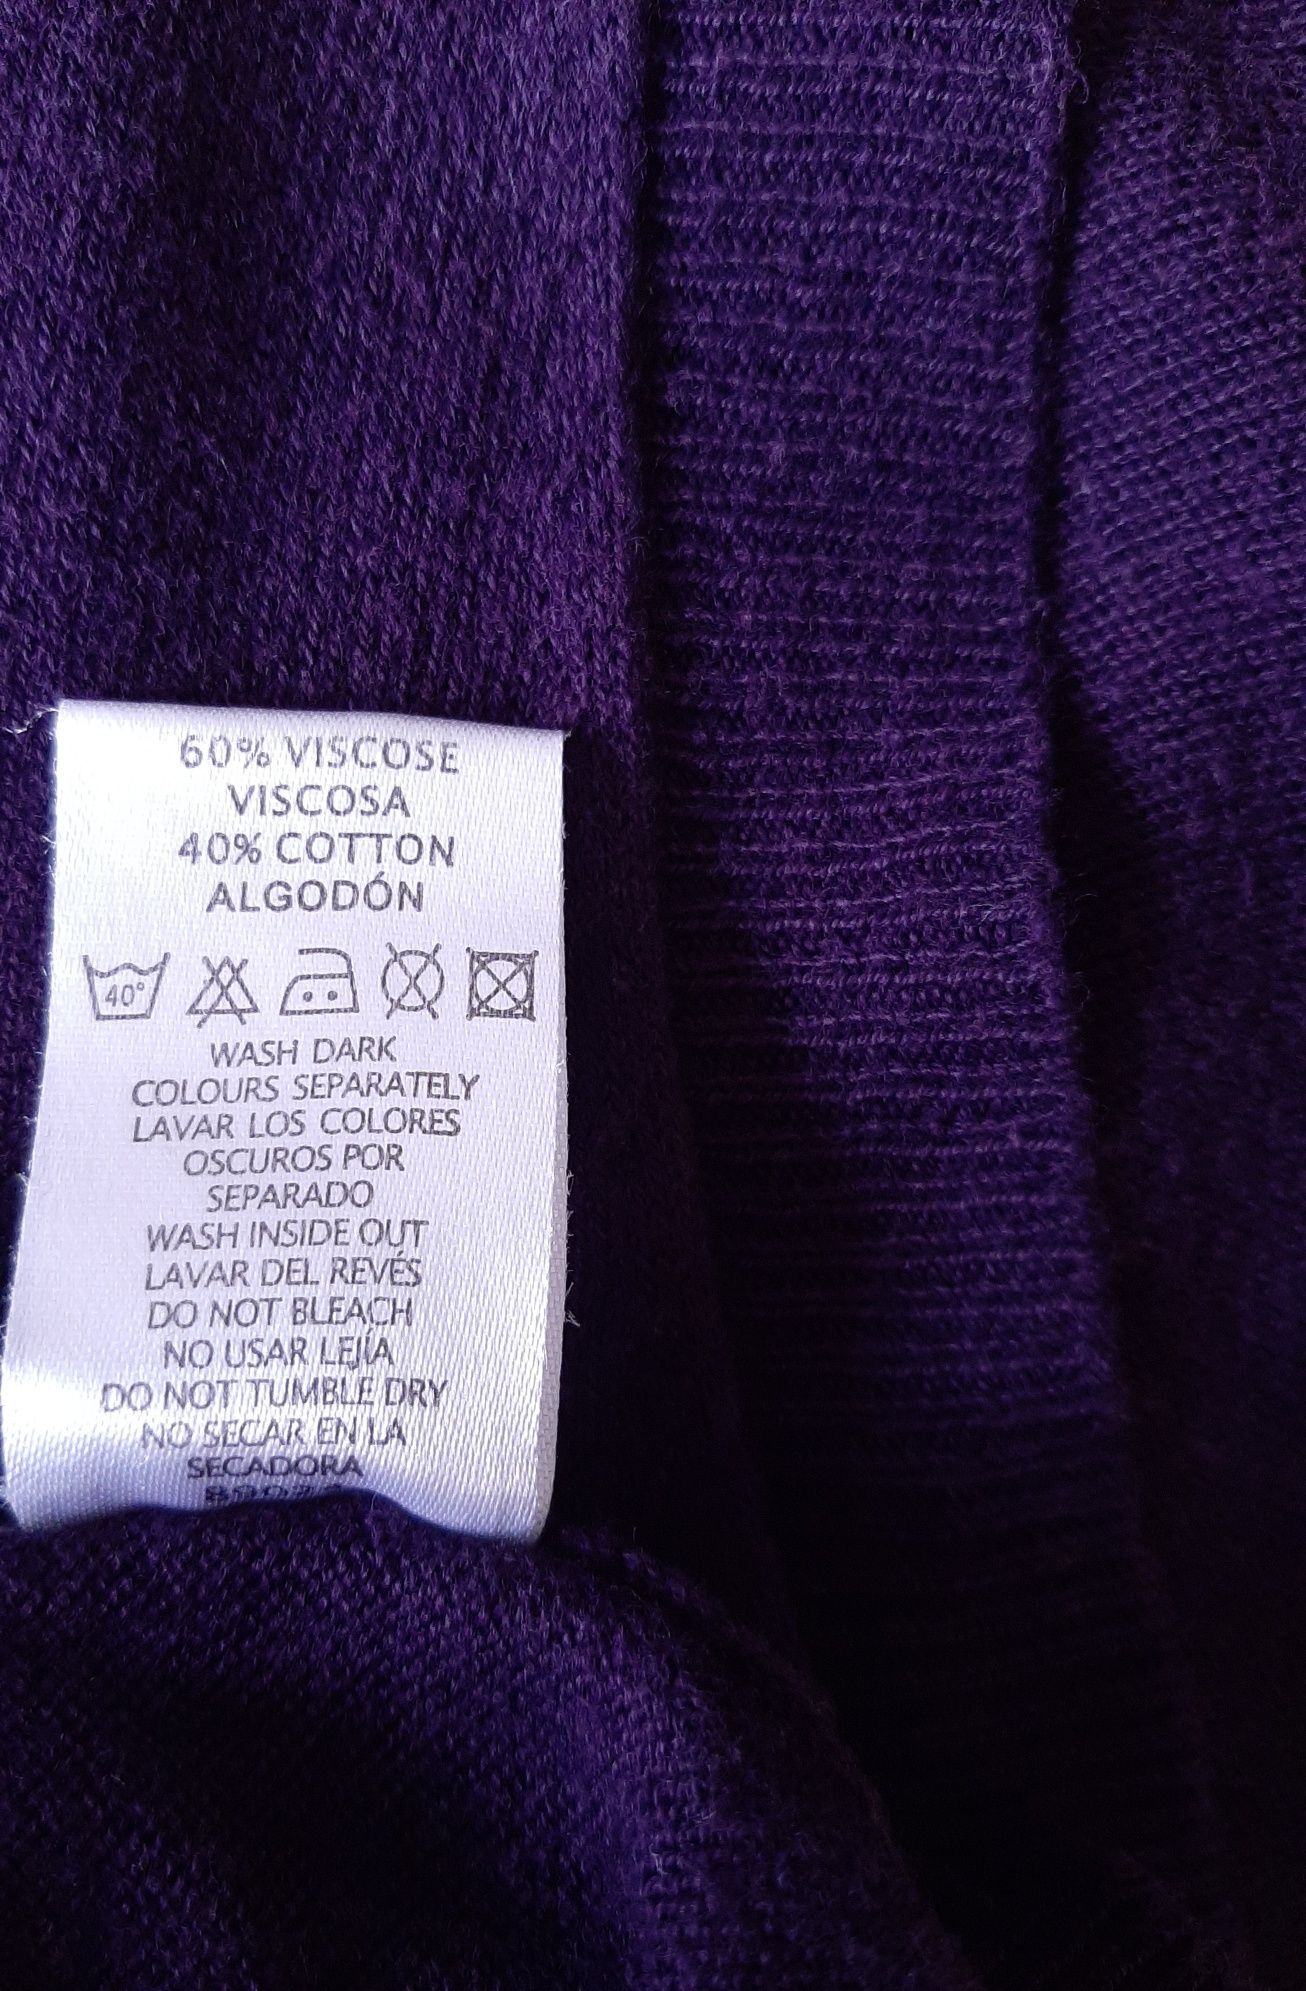 Atmosphere bluzeczka sweterkowa cienka r. 36 S , 60% wiskoza 40% baweł